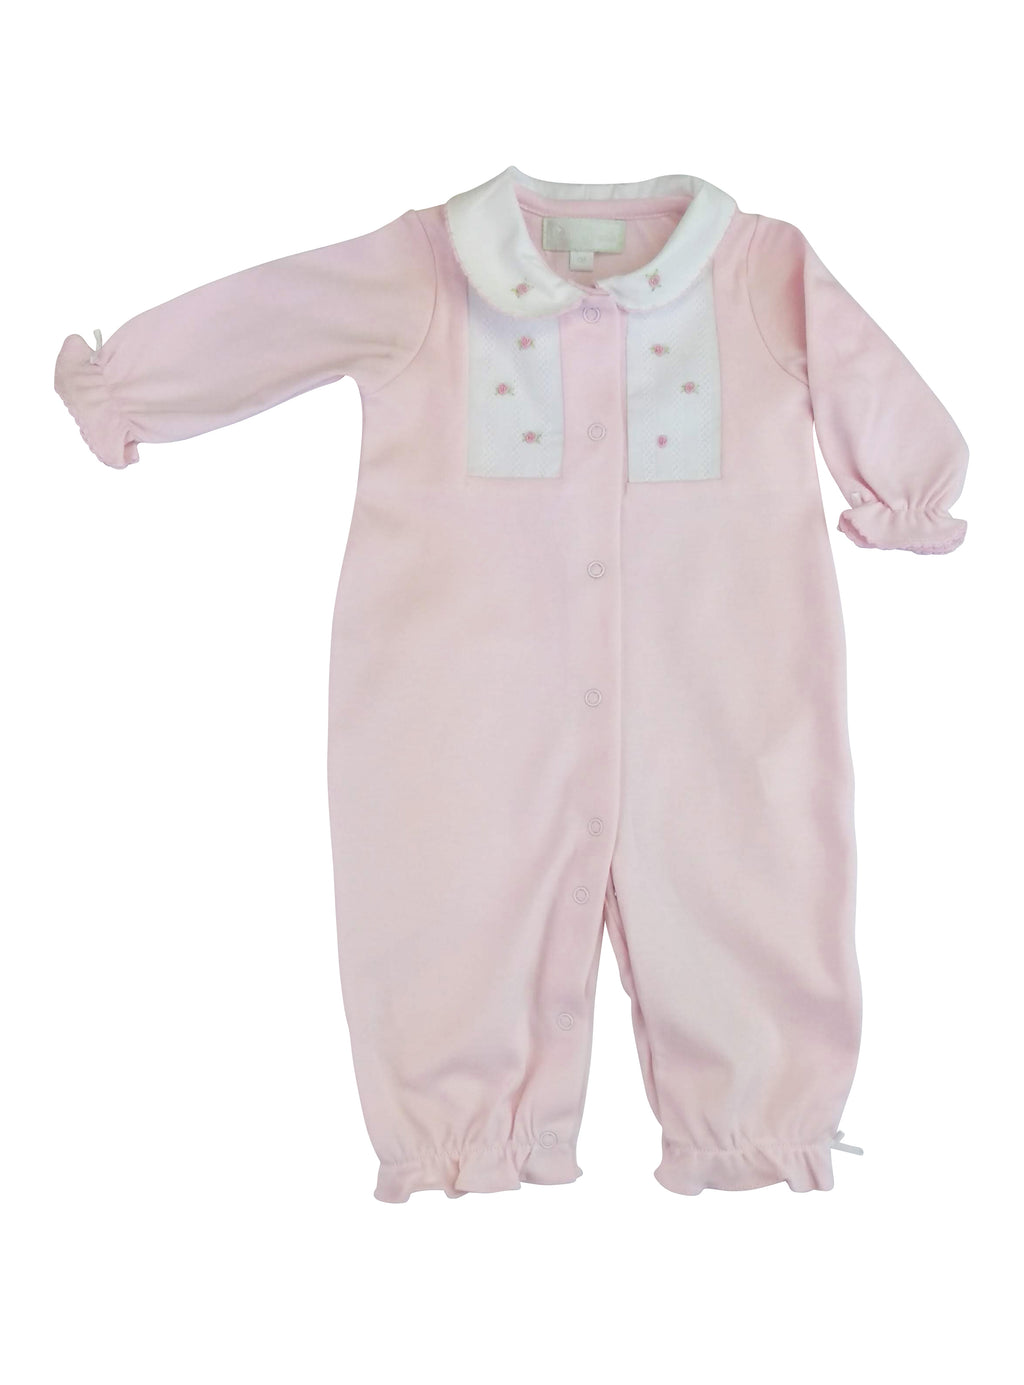 Baby Girl's Pink and White Rosebud Converter - Little Threads Inc. Children's Clothing